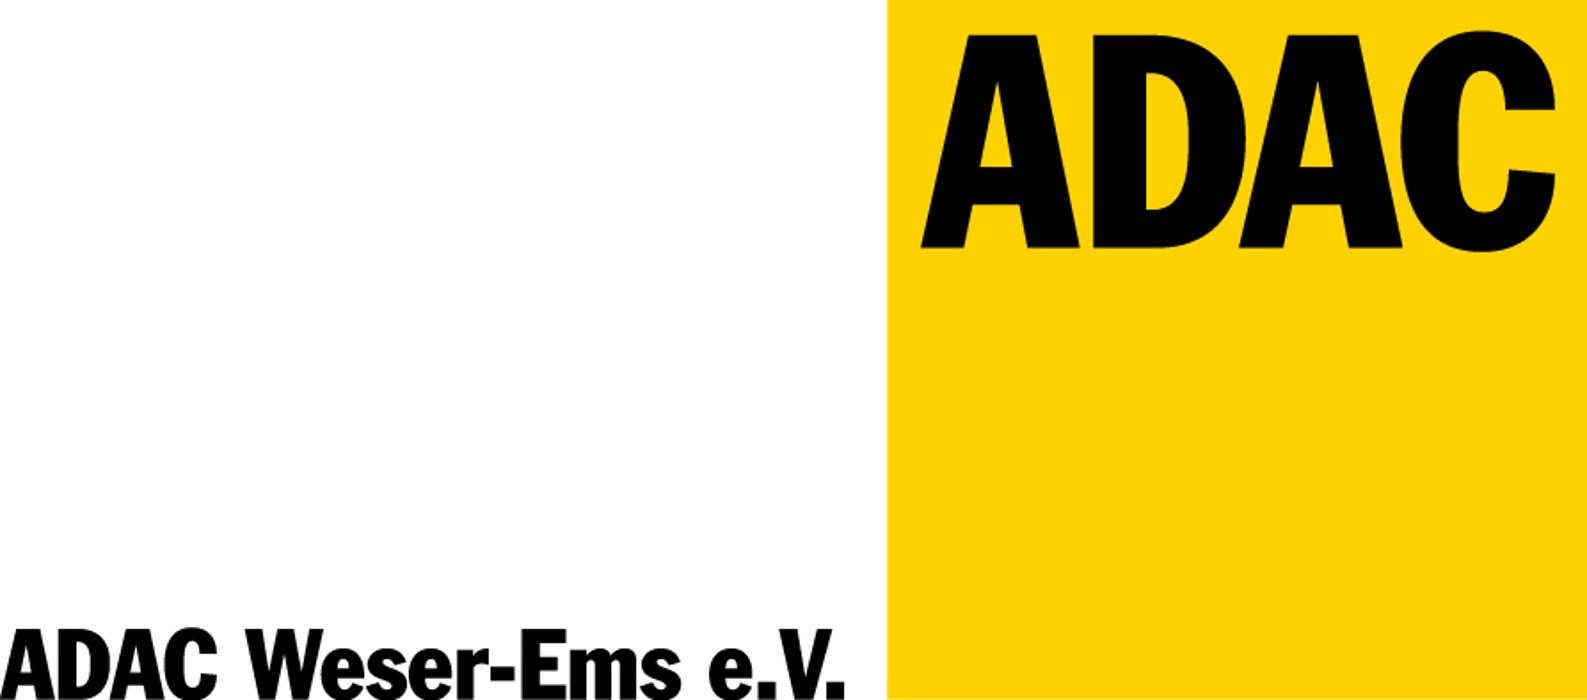 ADAC Team Weser-Ems e.V.